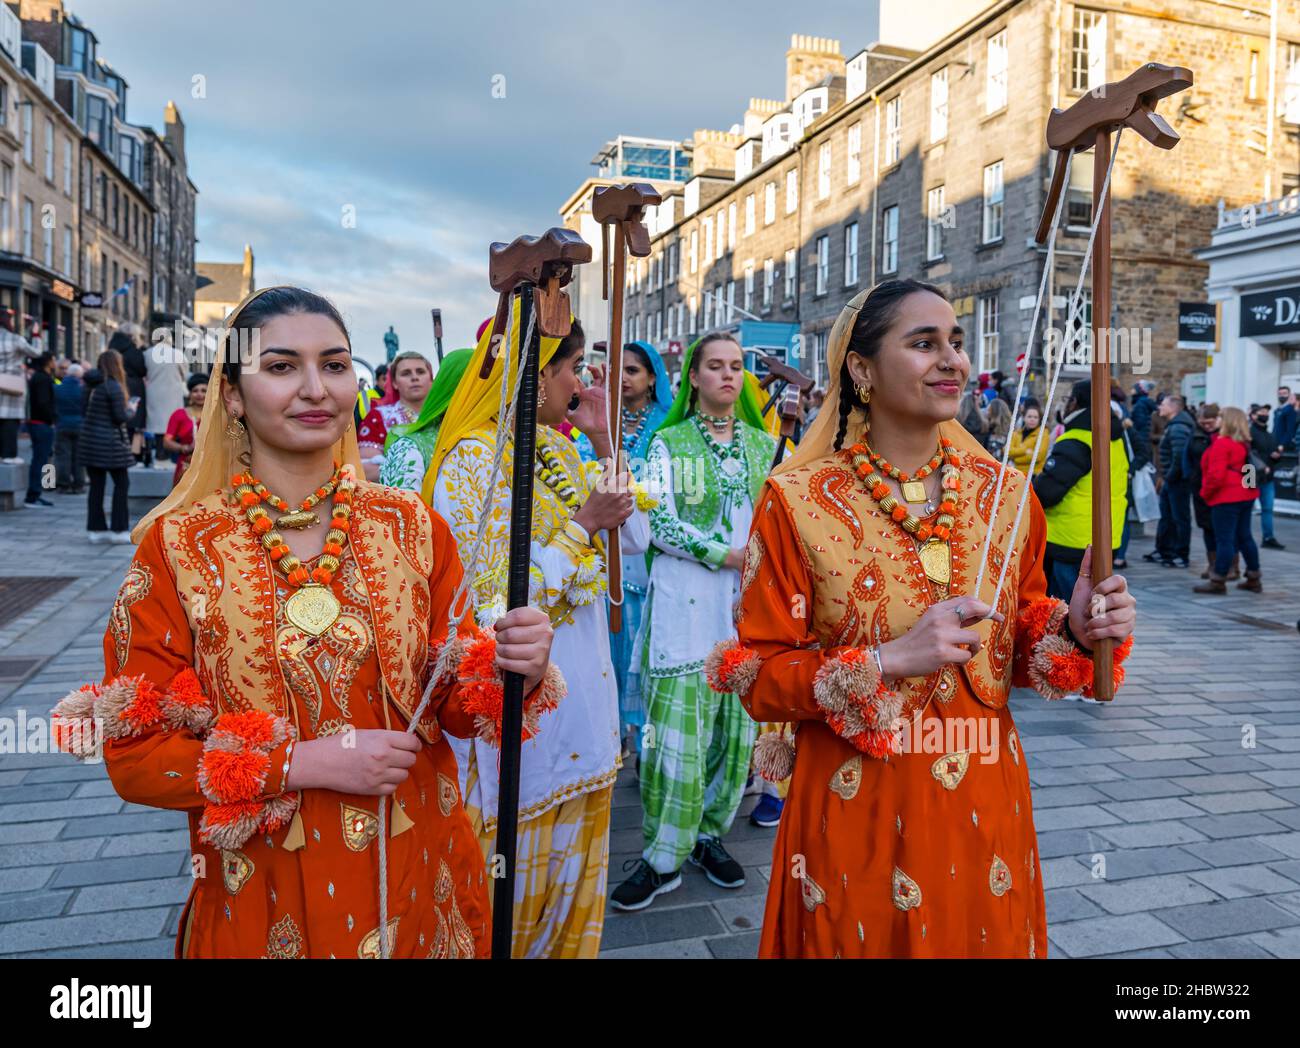 Danseurs indiens aux couleurs vives, festival de Diwali, Édimbourg, Écosse, Royaume-Uni Banque D'Images